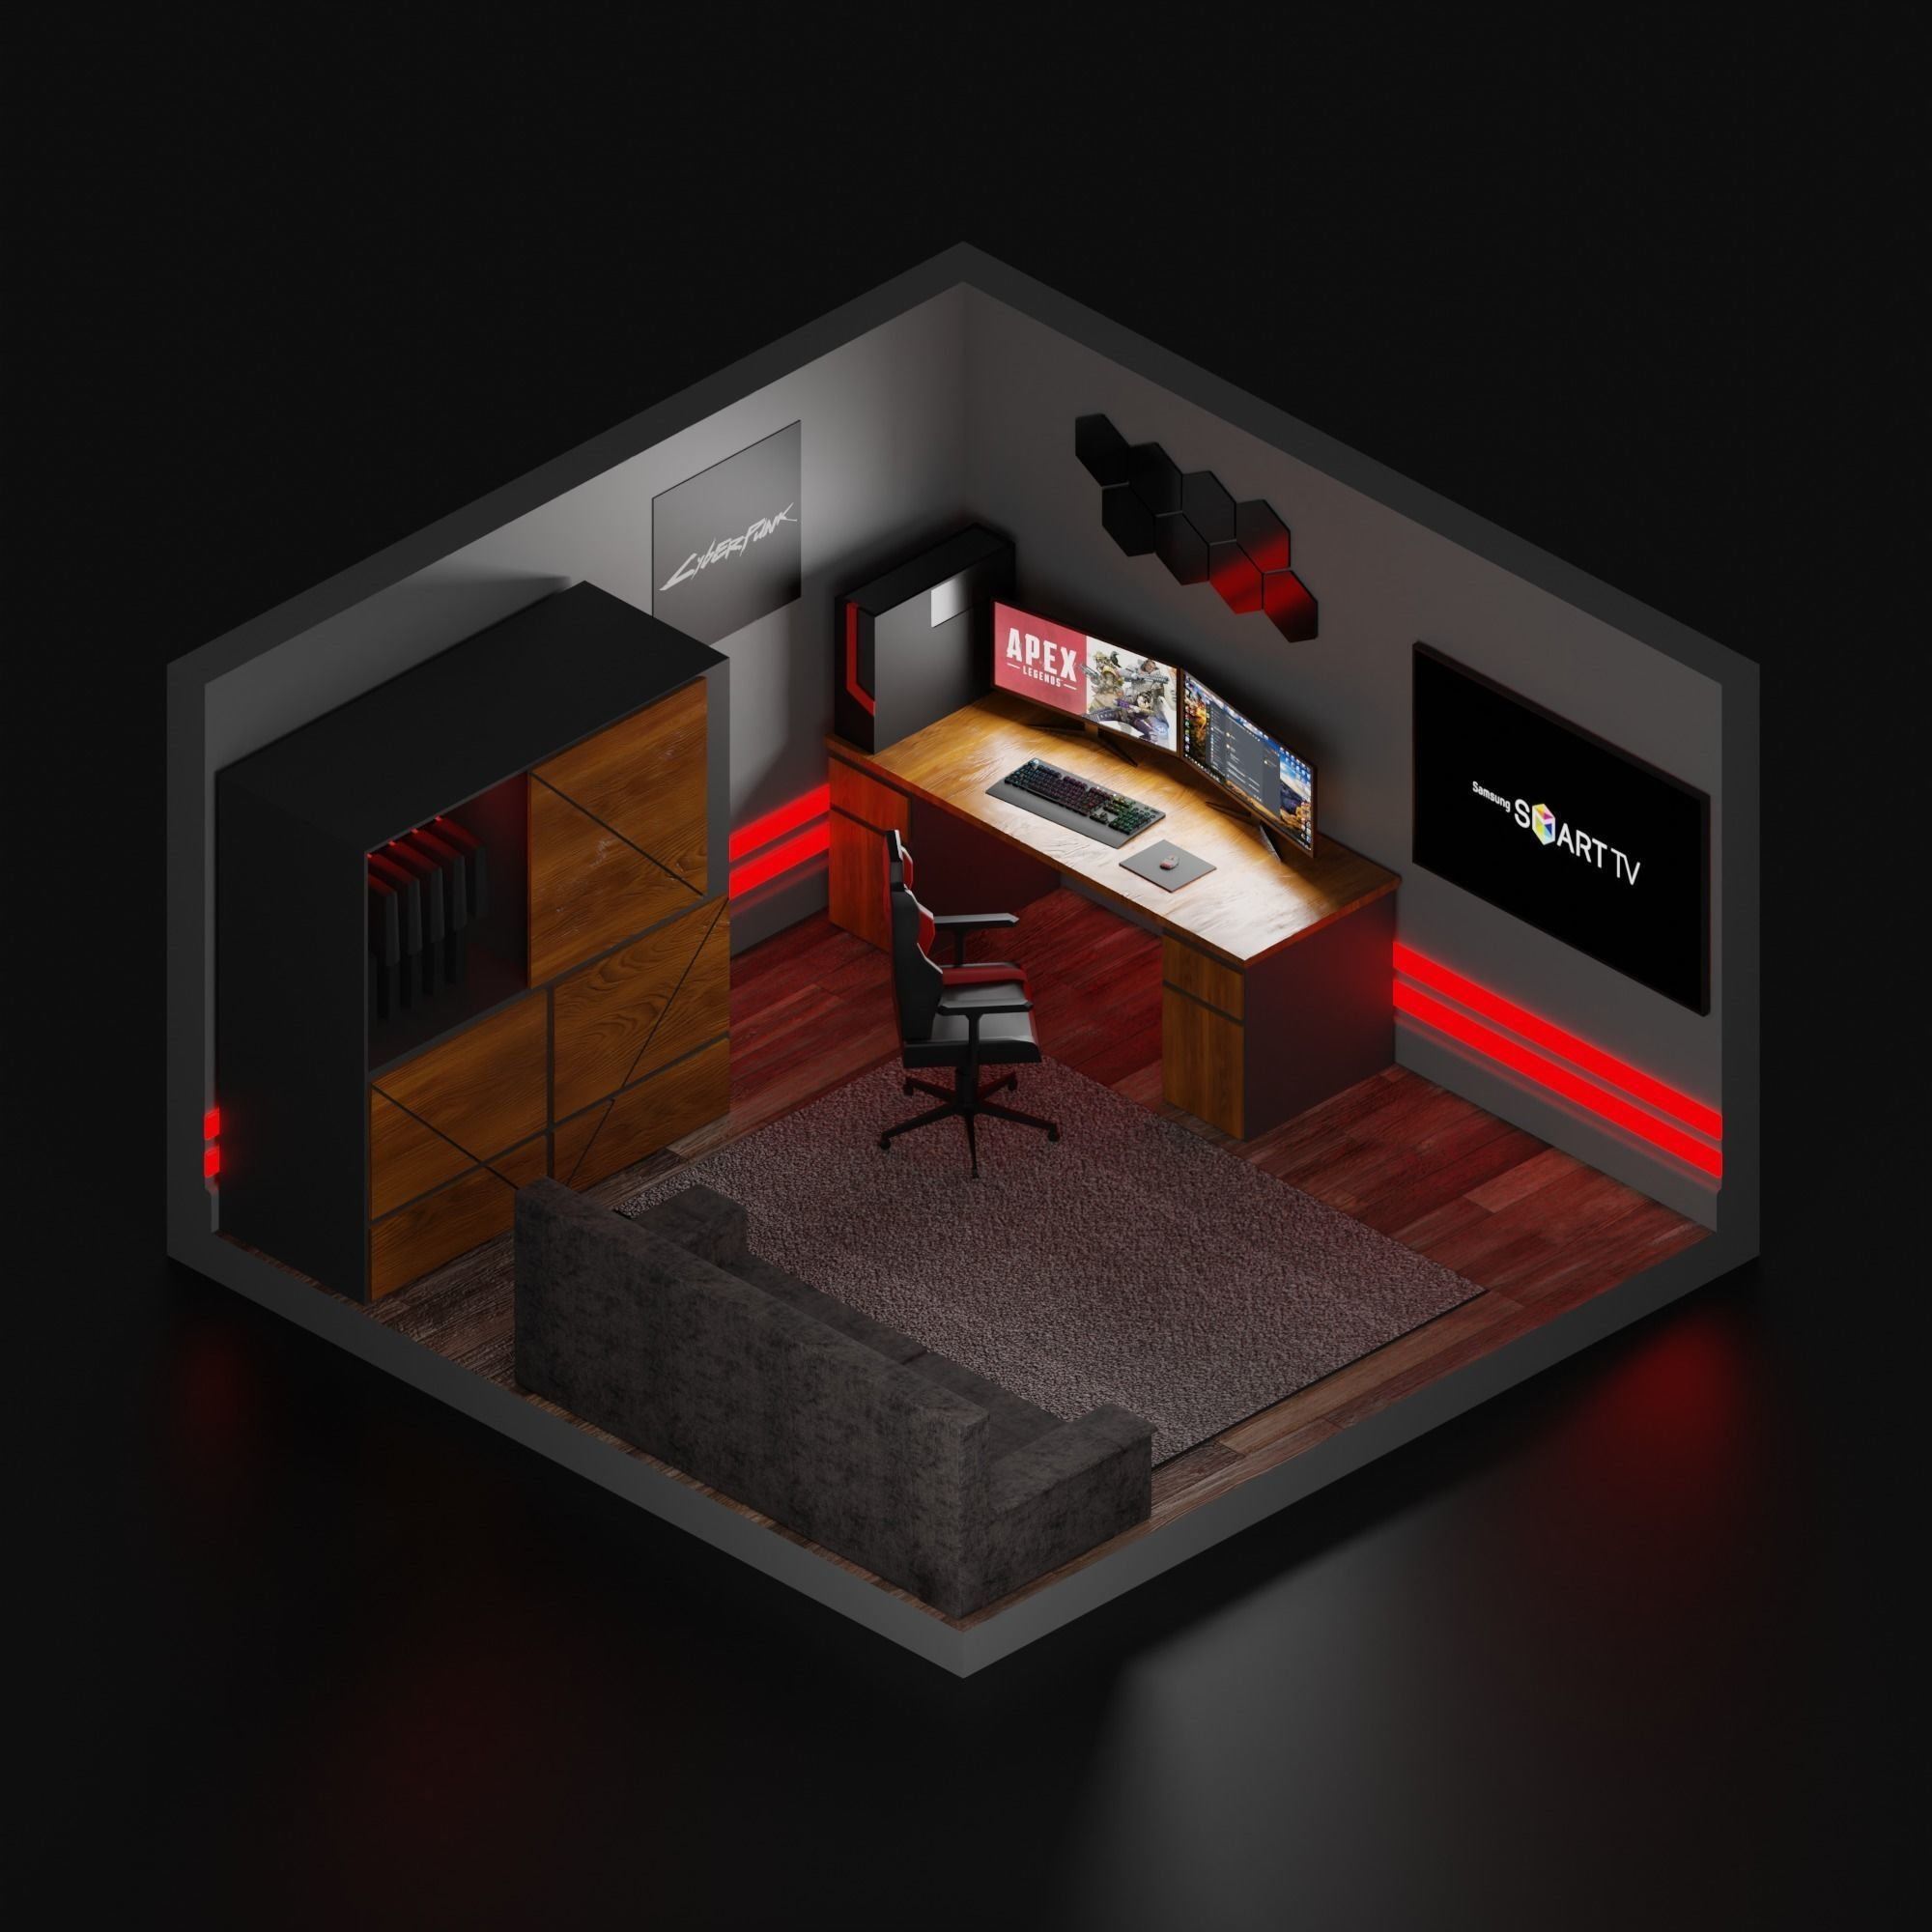 моделирование комнаты 3д с мебелью